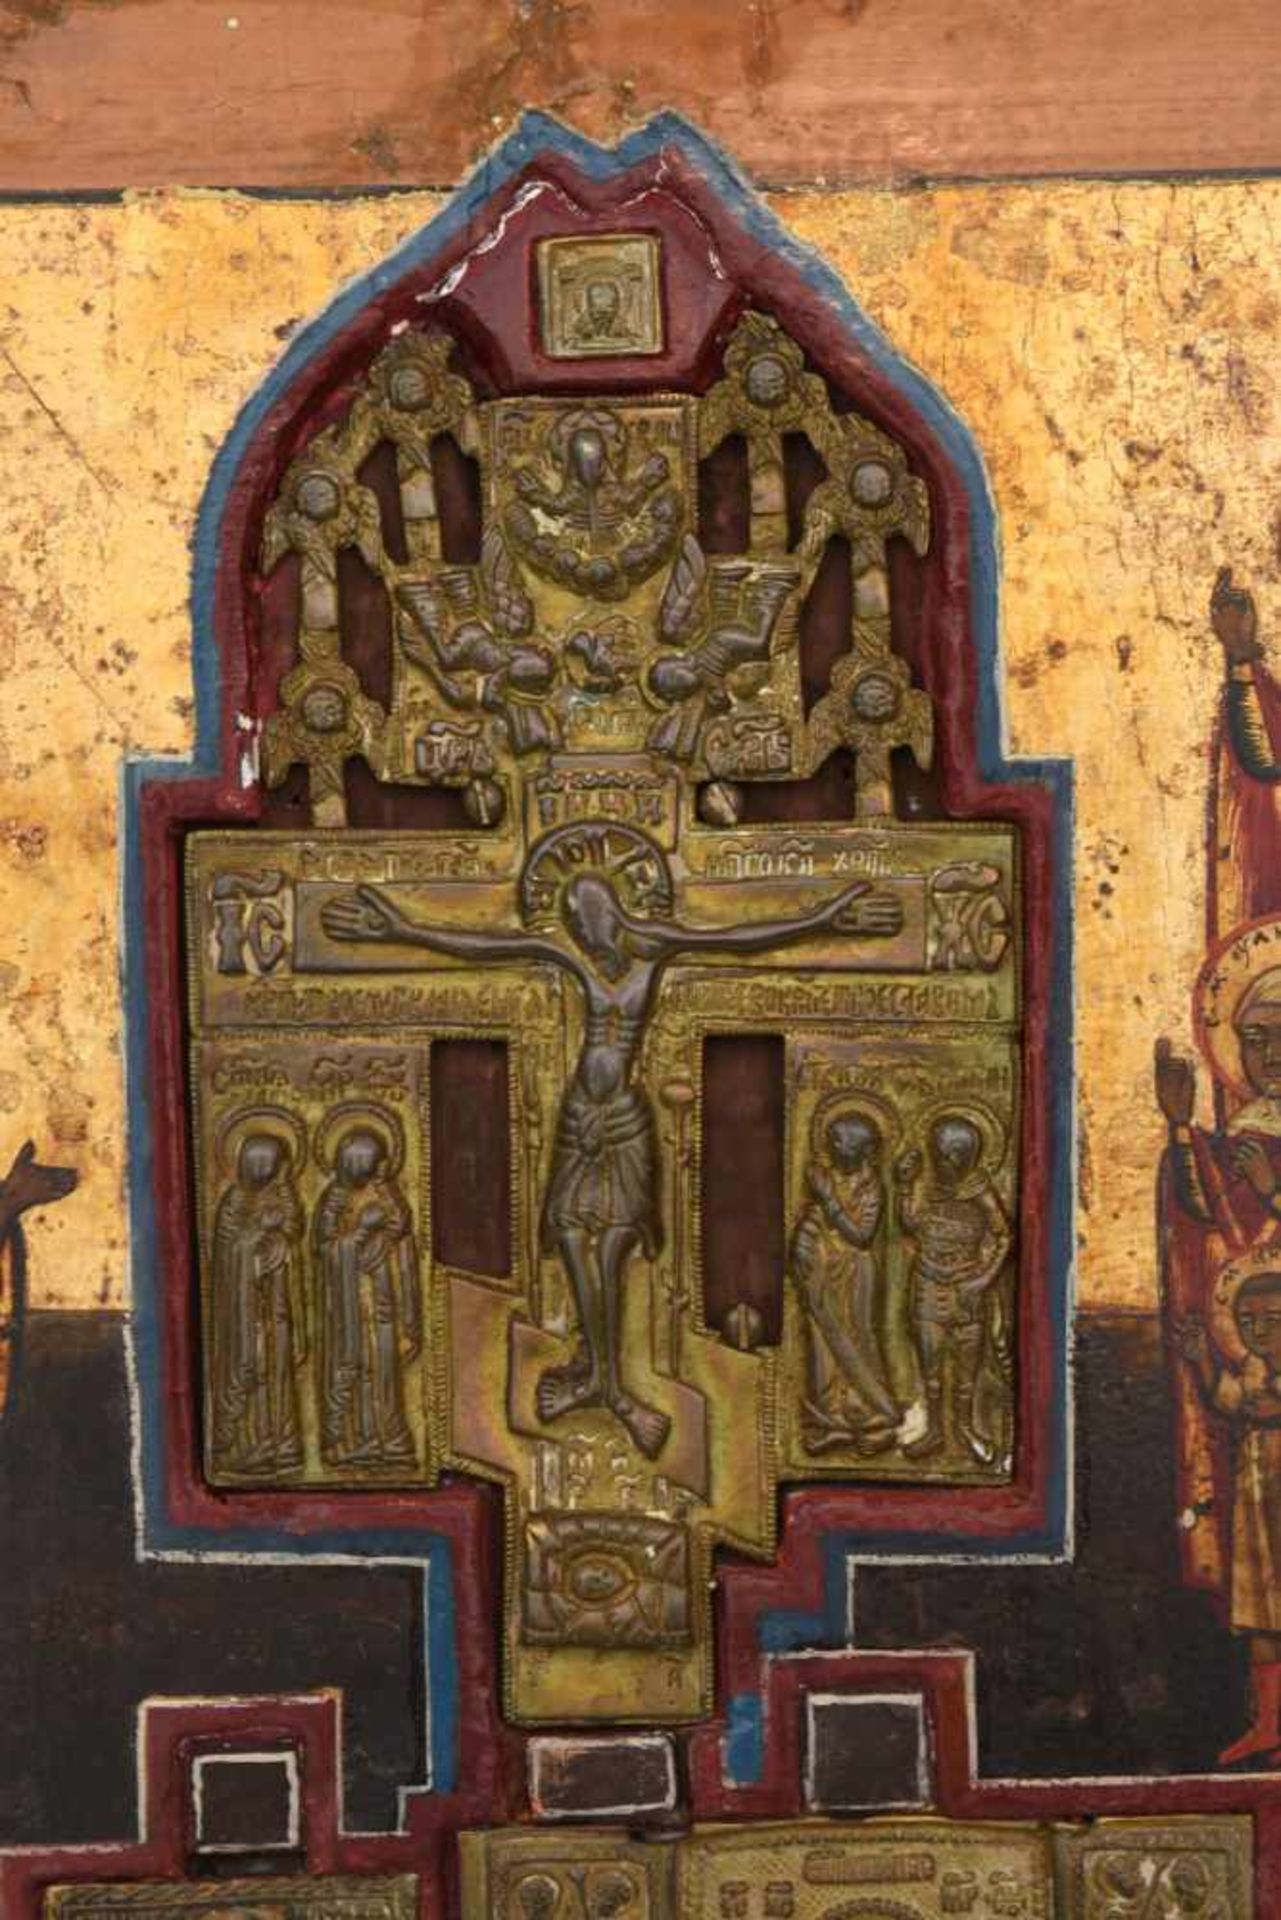 IKONE, Russisch- orthodox, wohl 18. Jh. Eingearbeitetes Kruzifix mit predellaartigem Unterbau. - Bild 2 aus 6